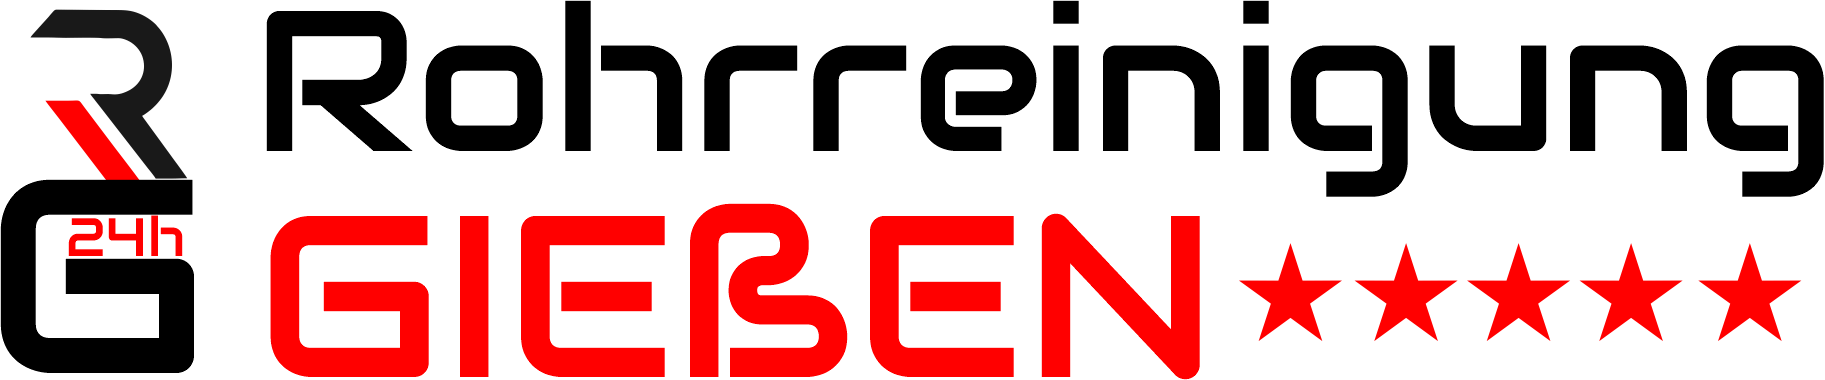 Rohrreinigung Gießen Logo